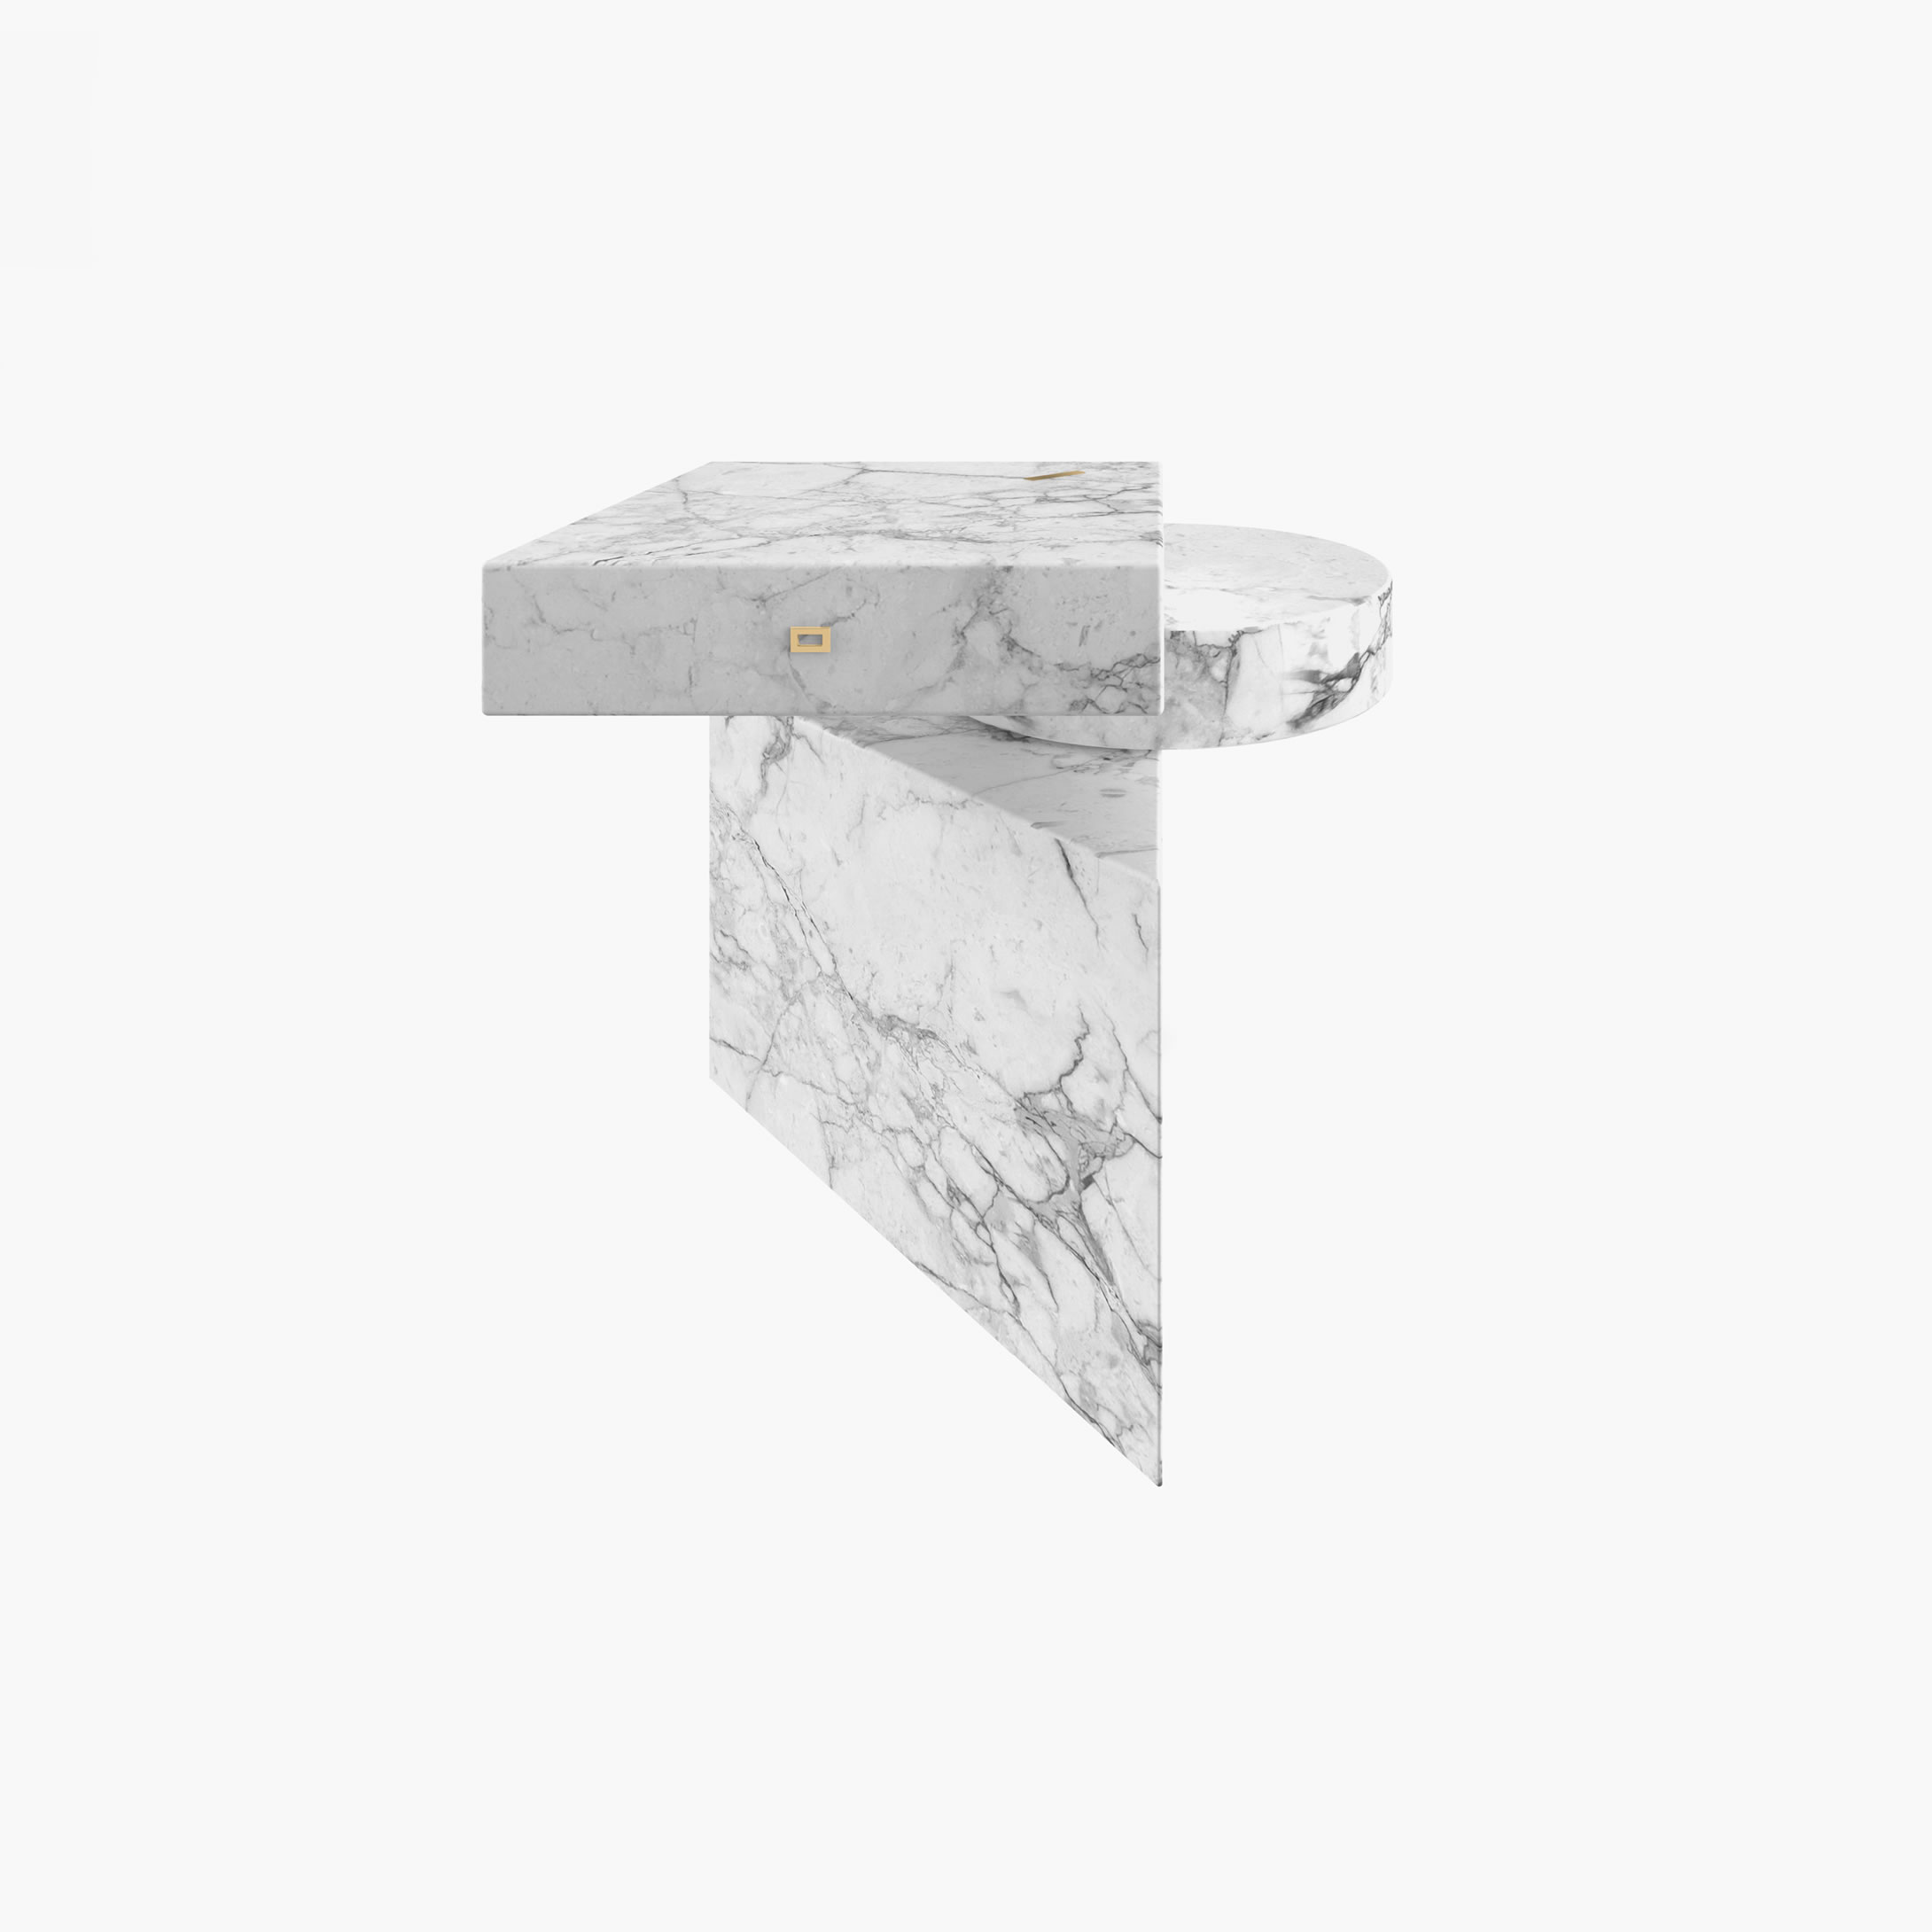 Beistelltisch Zylinder Quader Prisma Weiss Arabescato Marmor minimalistisch Wohnzimmer Innenarchitektur Beistelltische FS 116 FELIX SCHWAKE